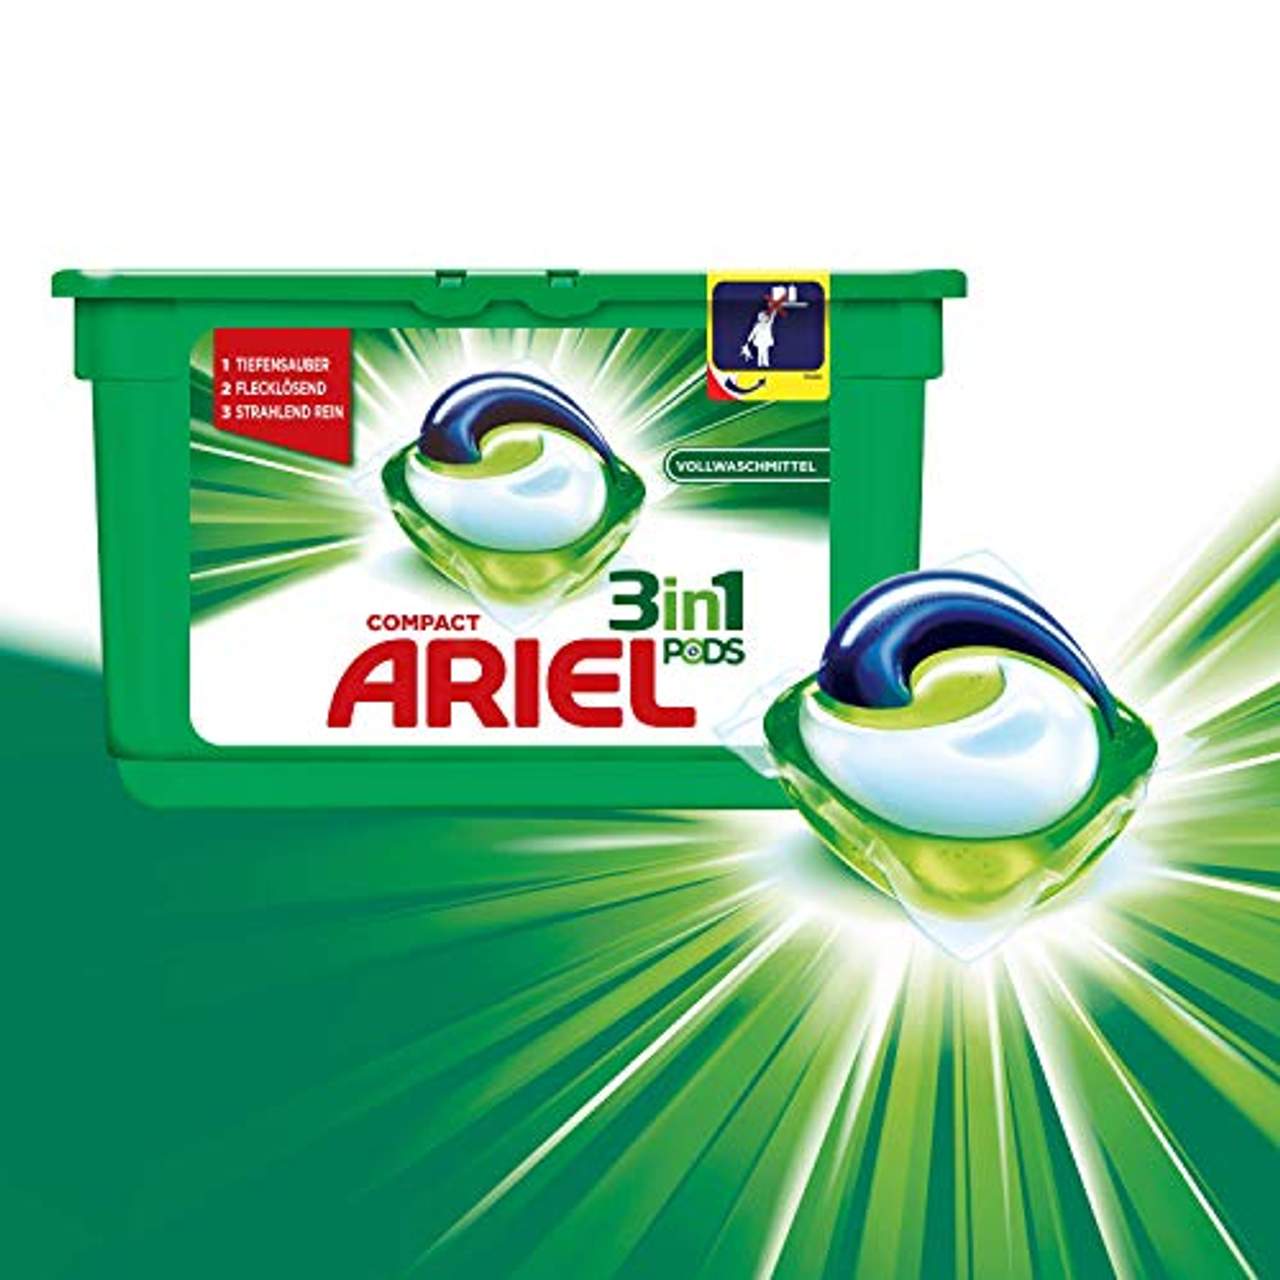 Ariel 3in1 Pods Vollwaschmittel